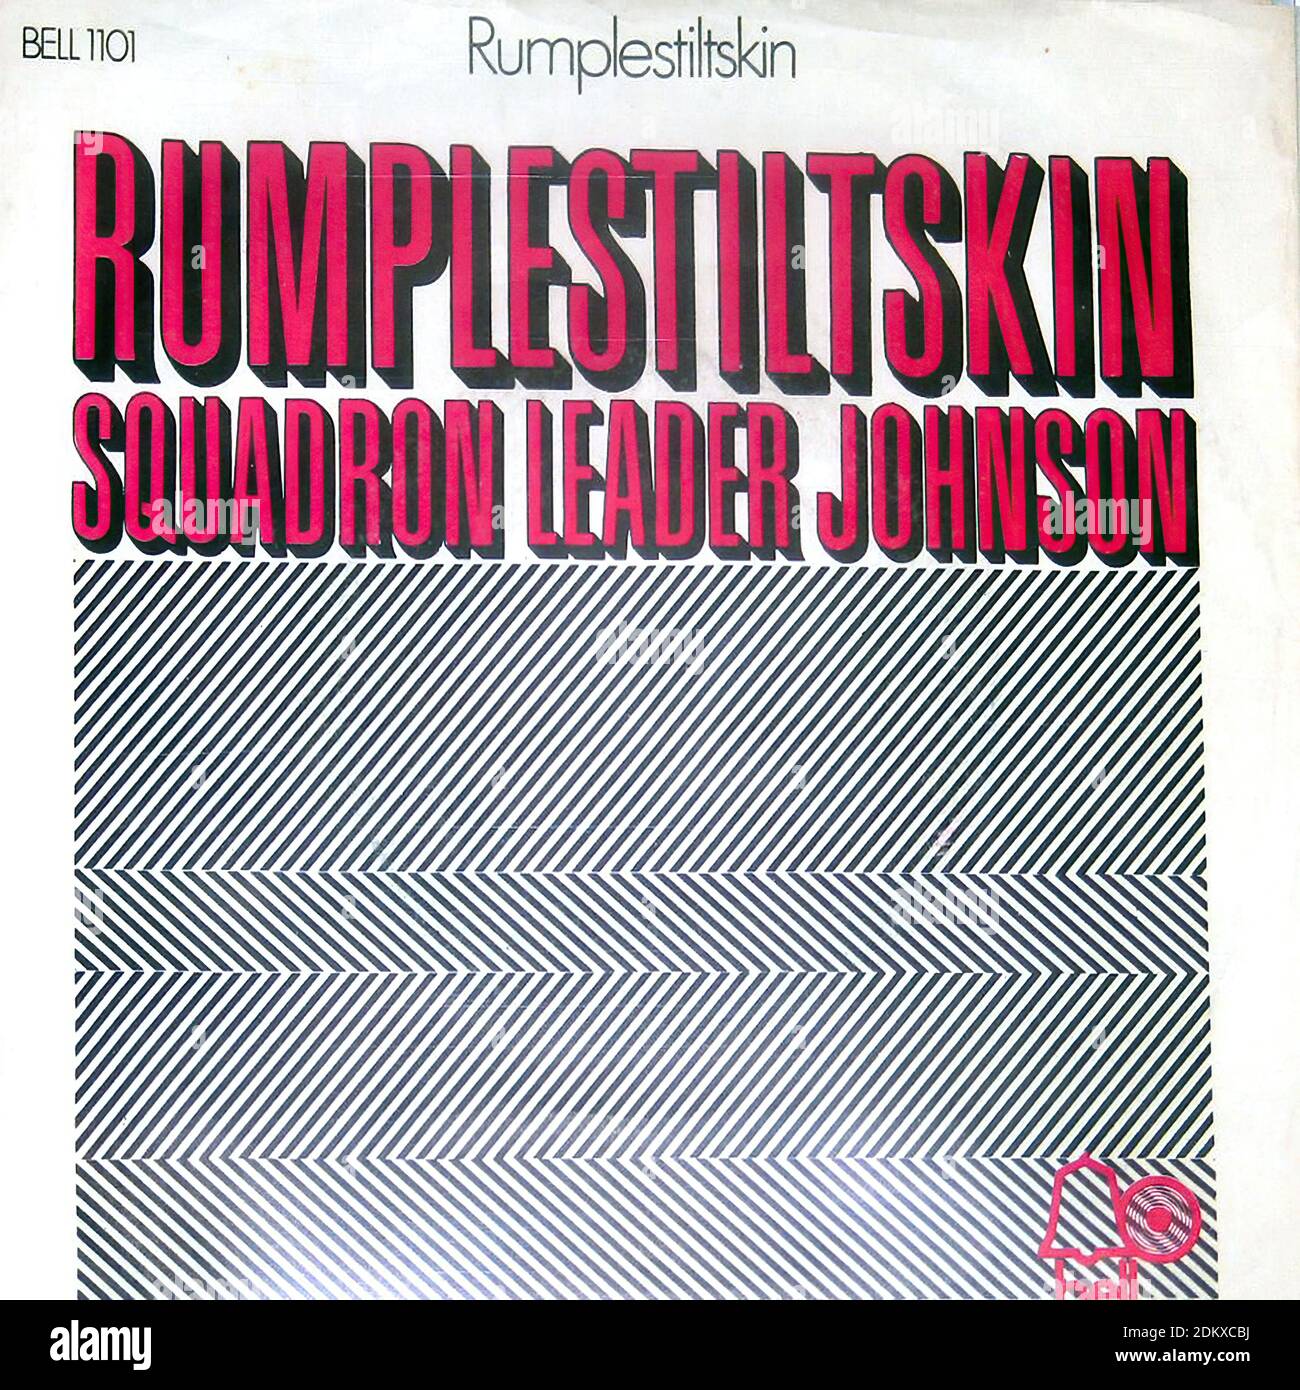 RUMPLESTILTSKIN Chef d'escadron Johnson   Rumplestiltskin - Vintage Vinyl Record Couvercle Banque D'Images